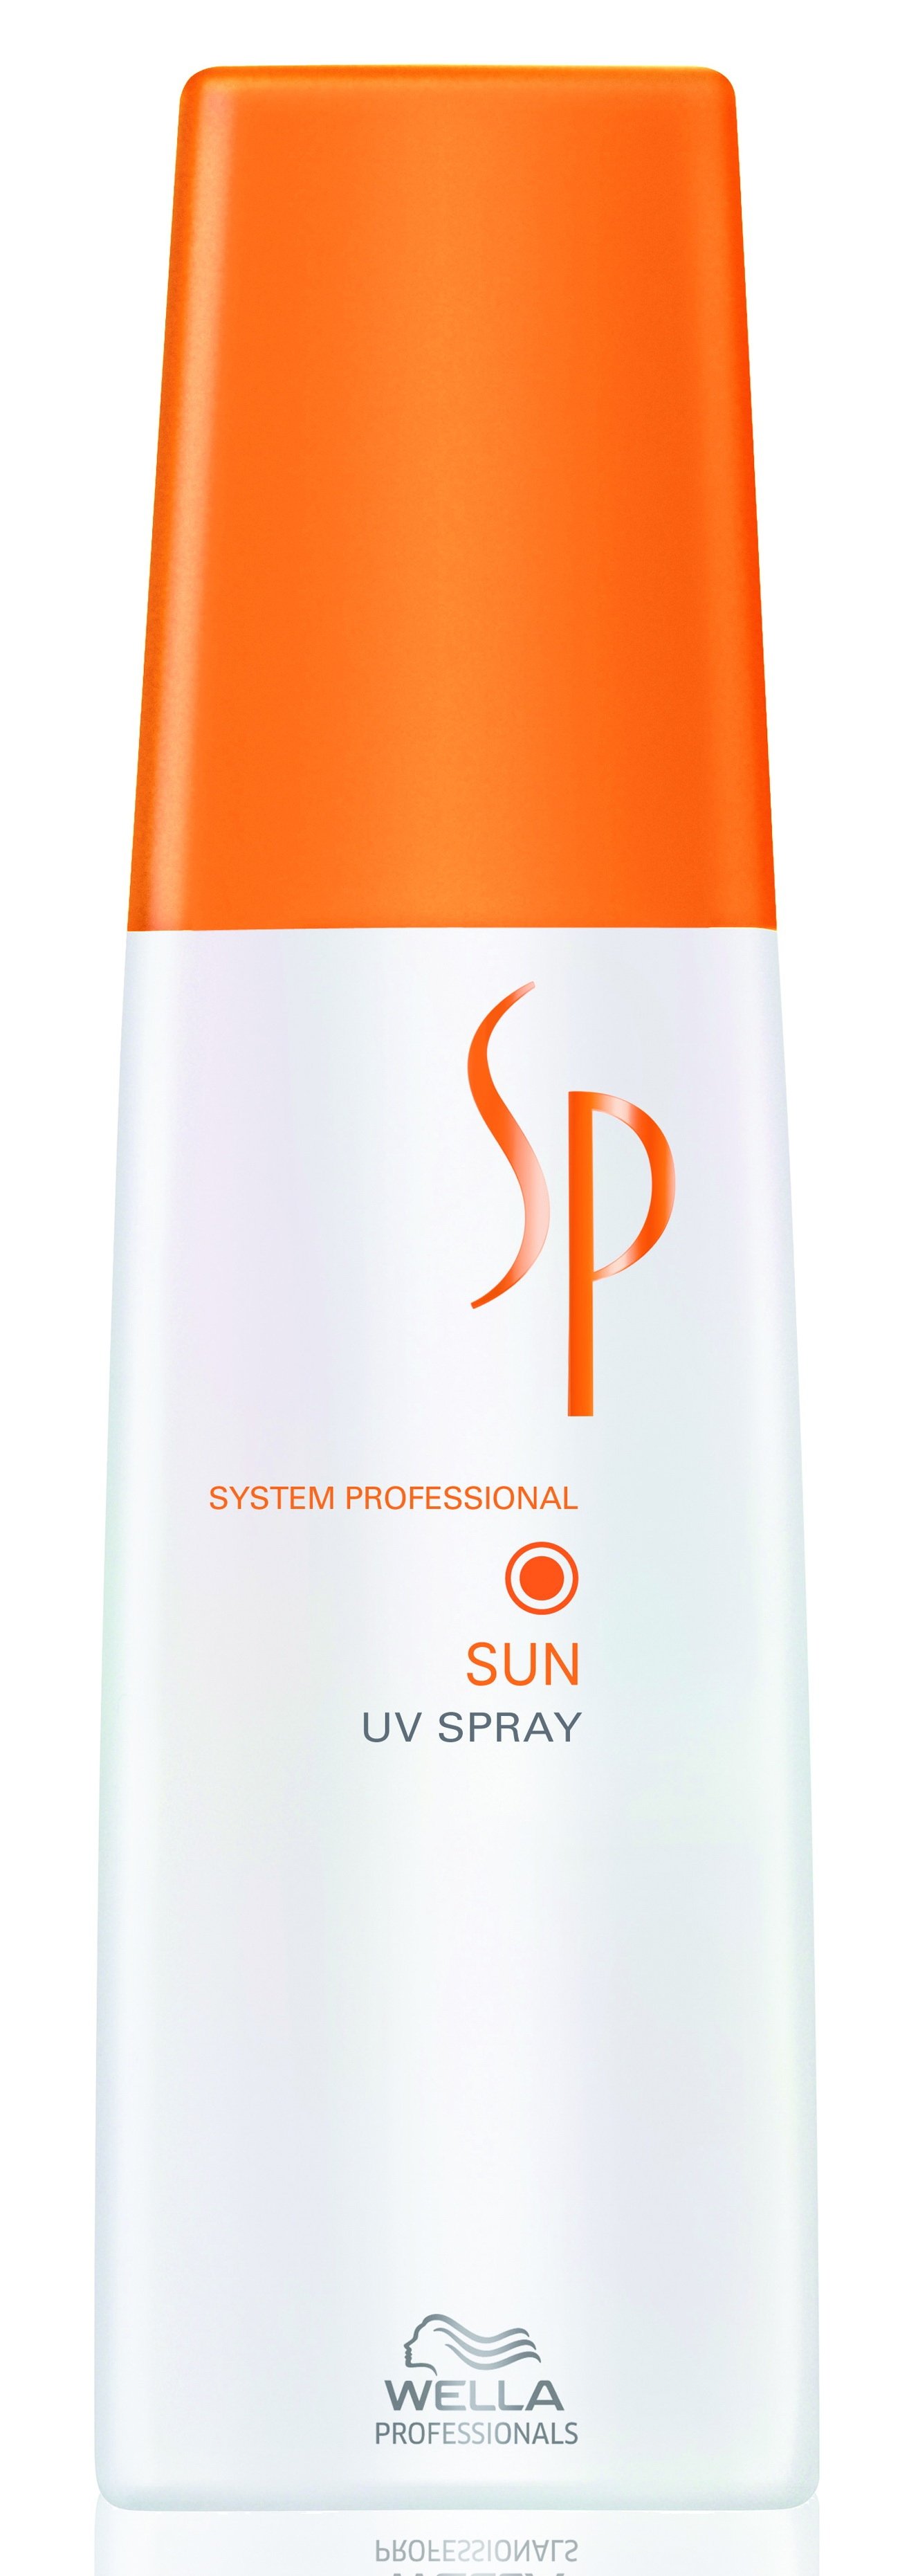 Спреи для волос:  System Professional -  Спрей Sun UV Spray для интенсивной защиты цвета волос (125 мл.) (125 мл)